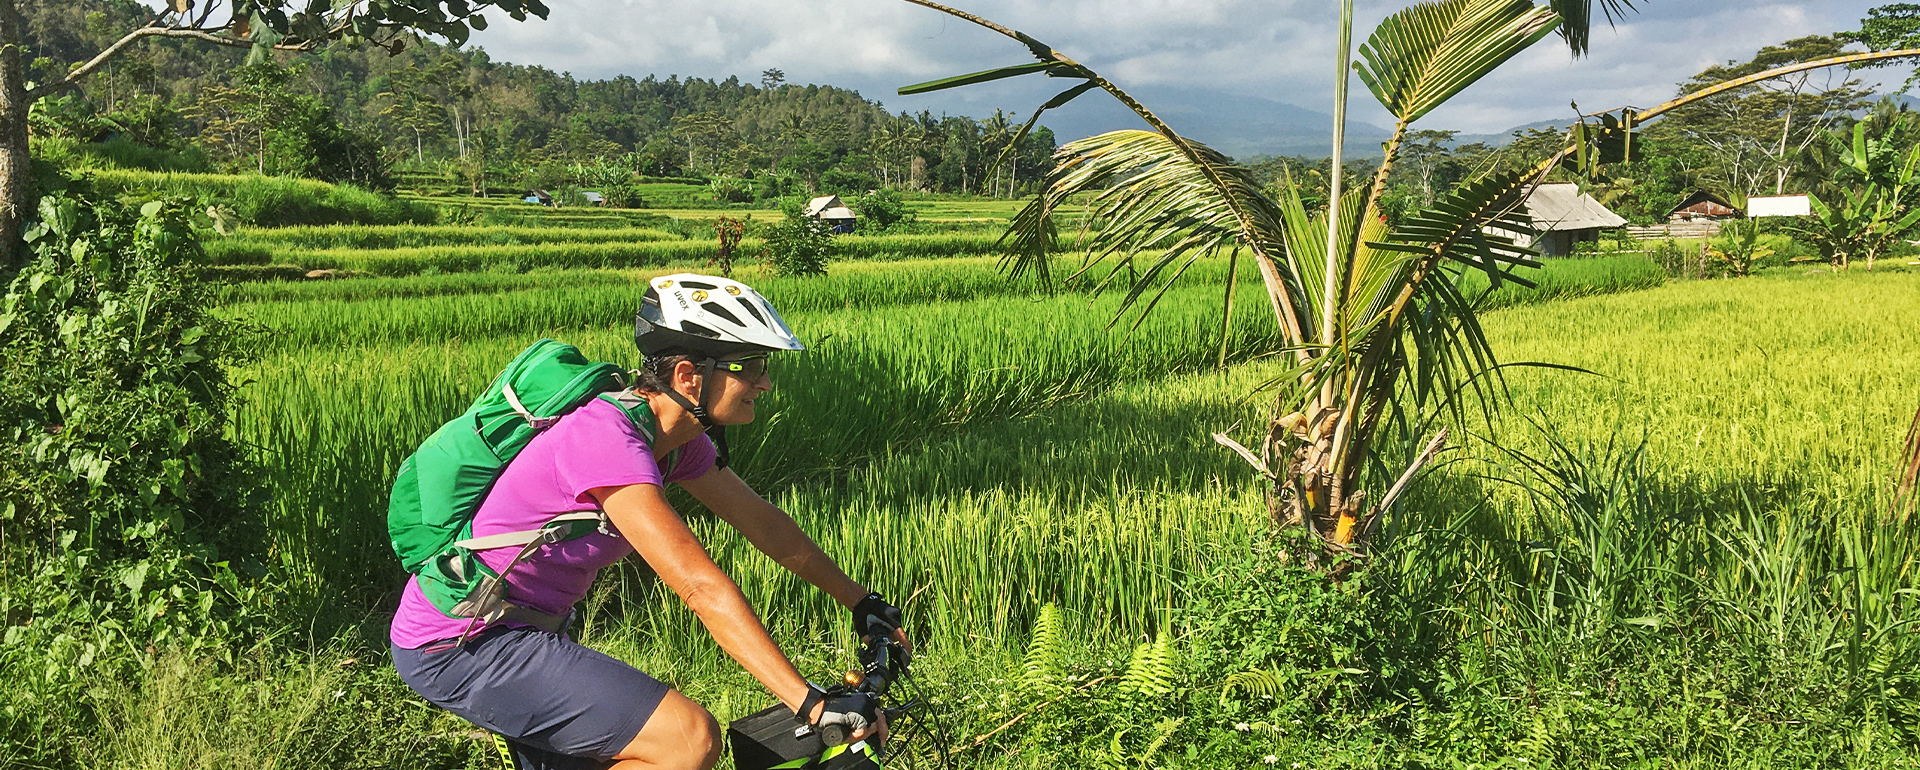 Radreise Bali Reisfelder Bikerin